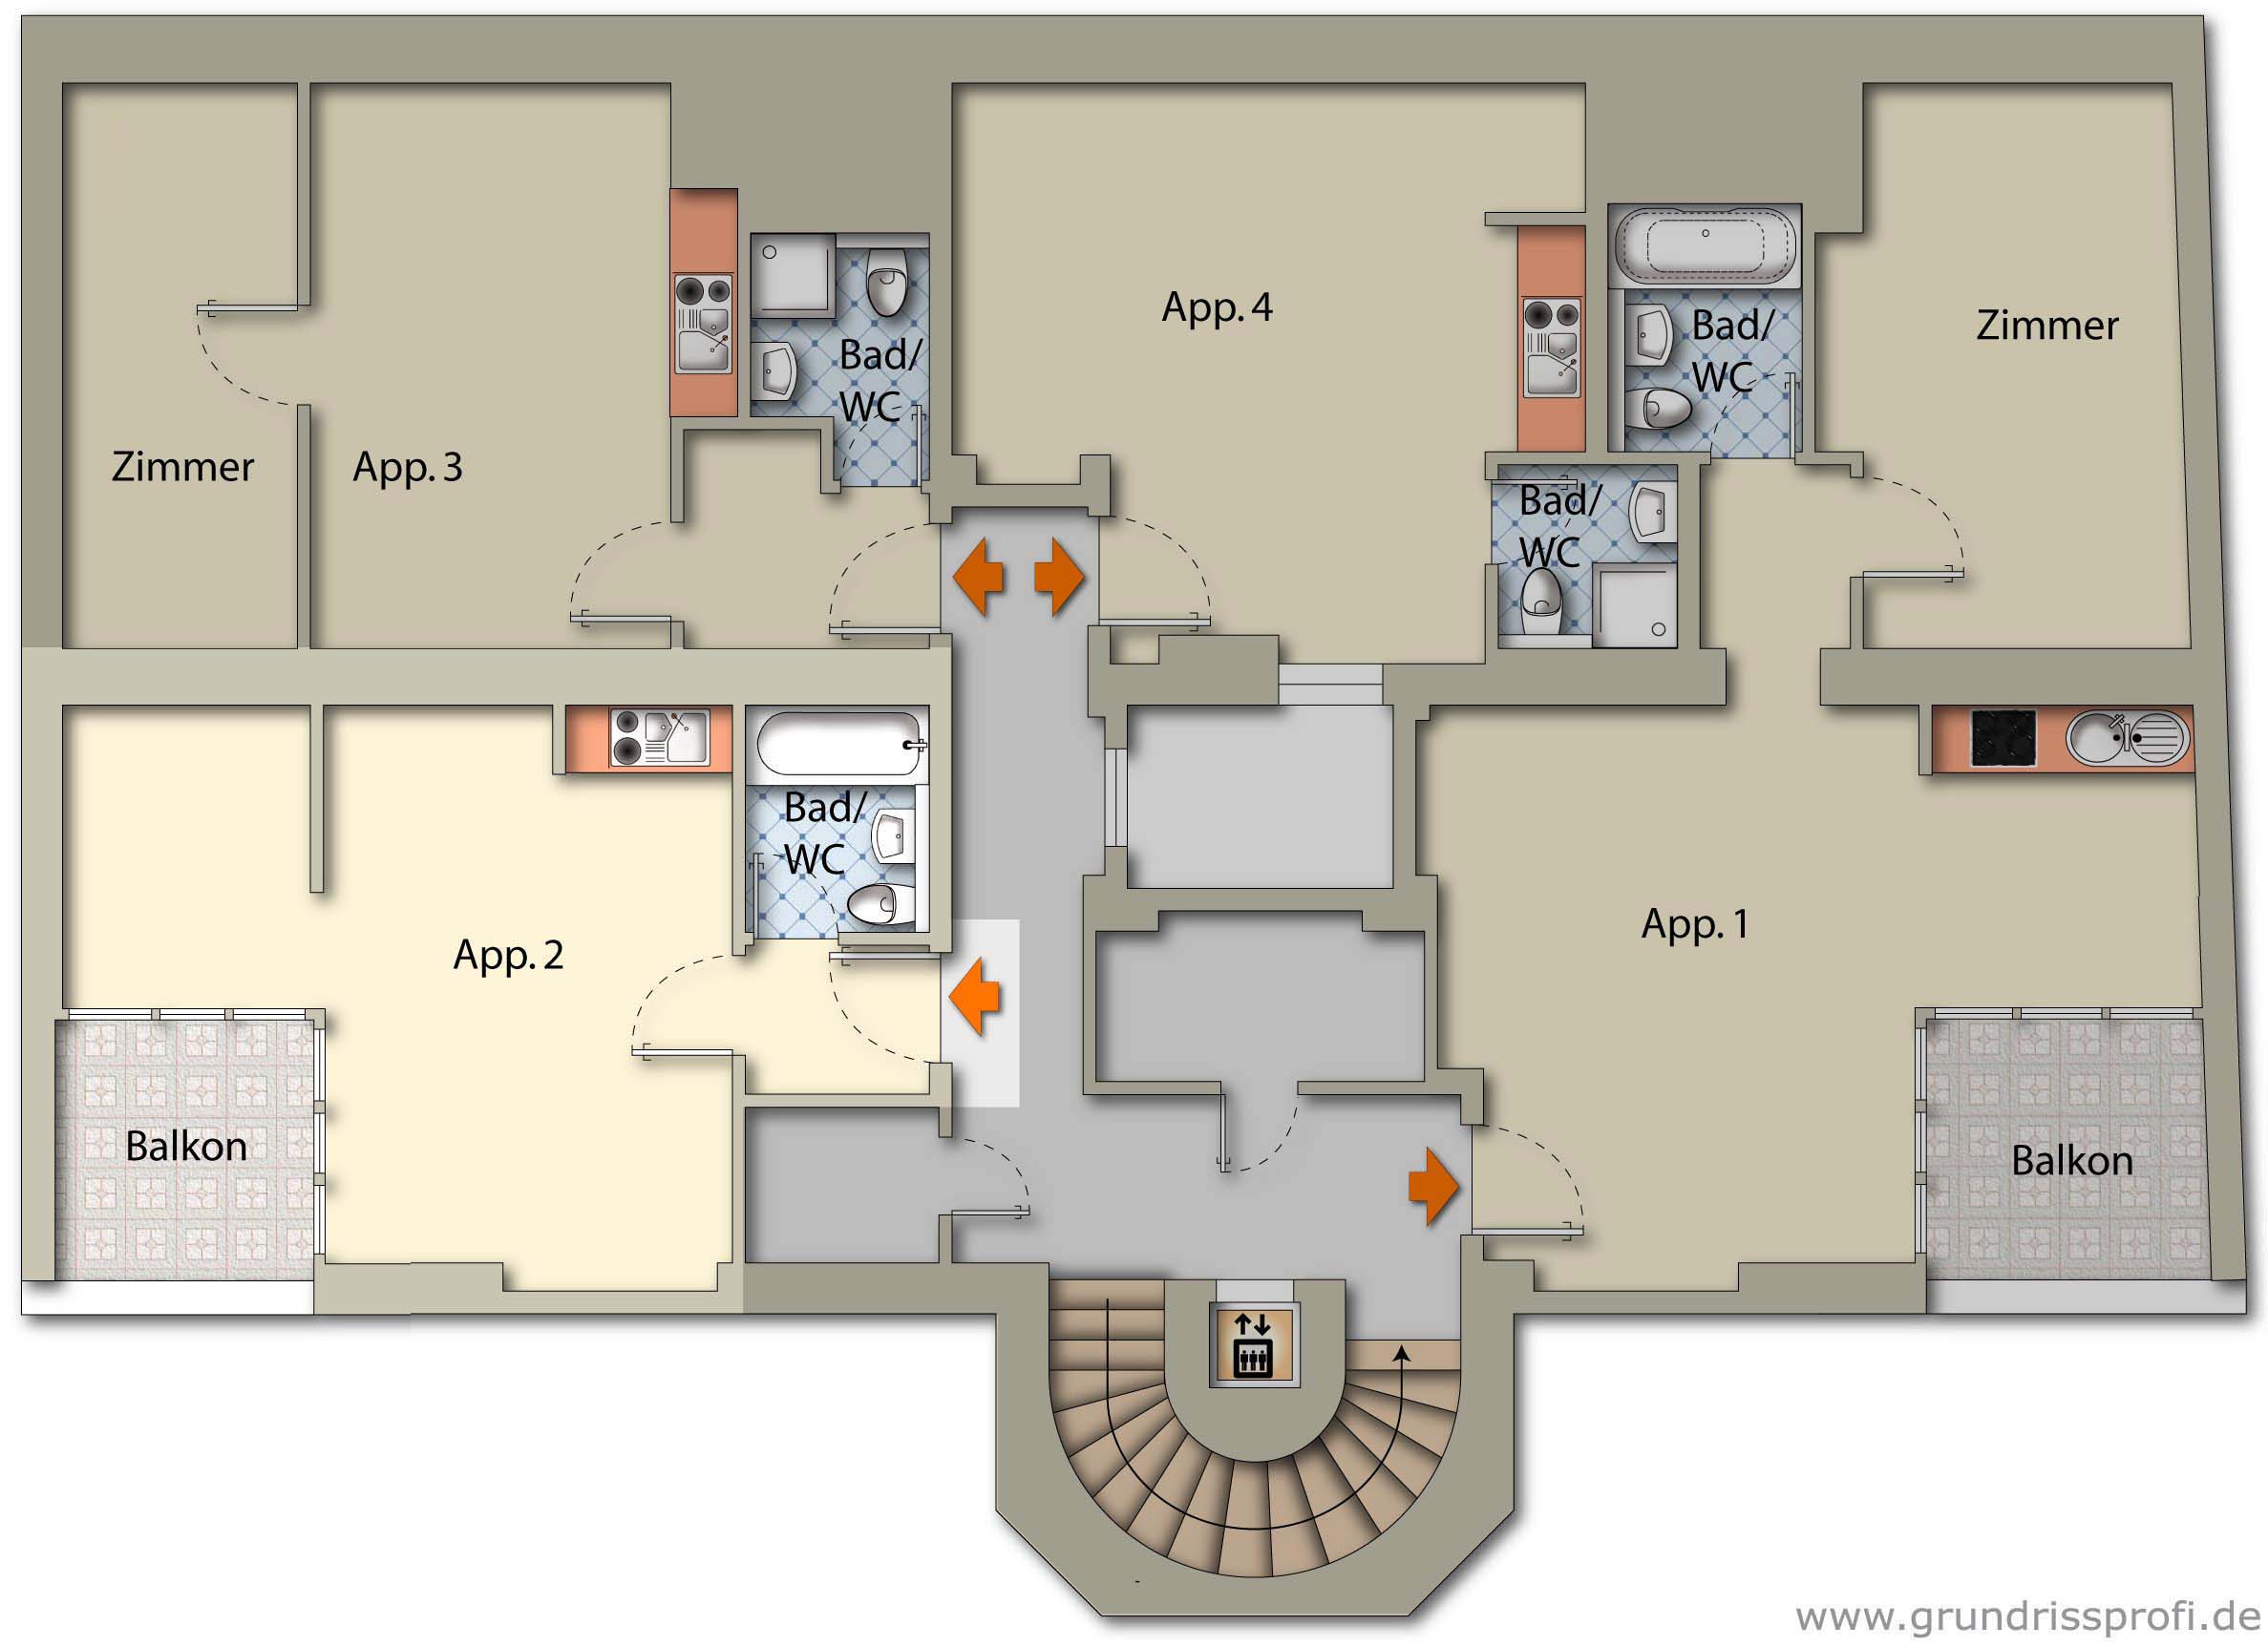 Apartment 2 ground plan floor